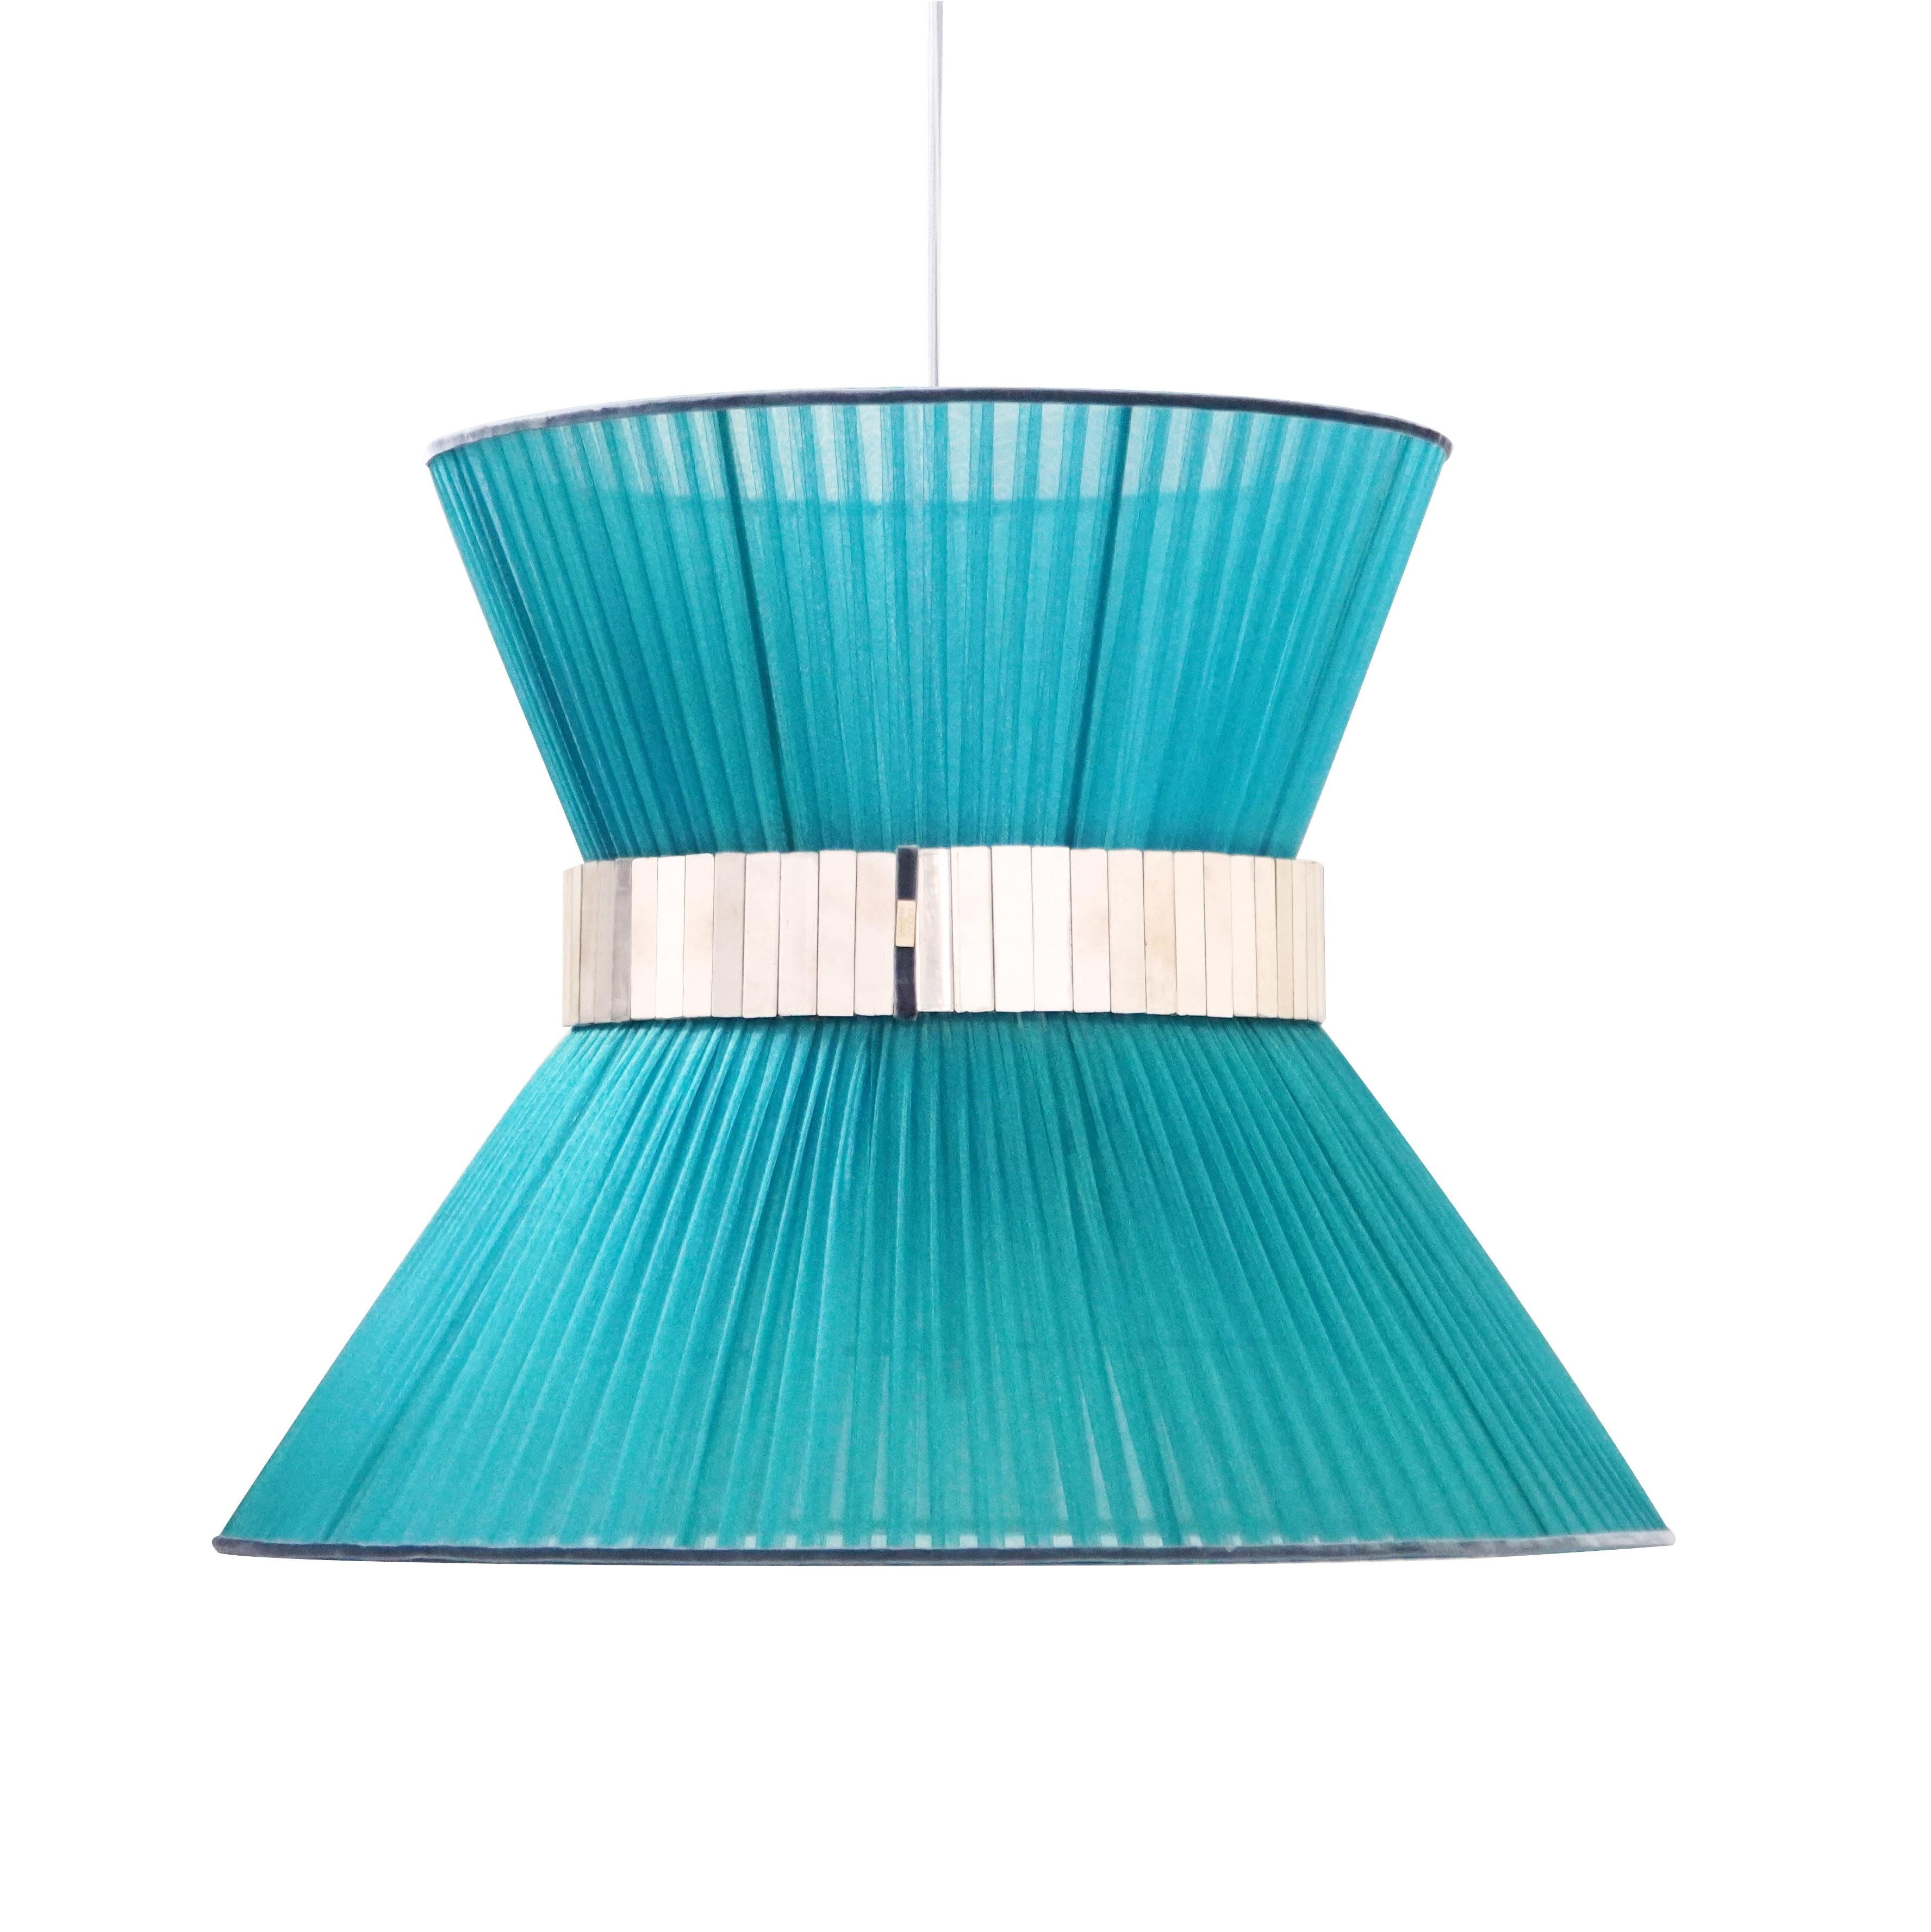 TIFFANY Die ikonische Lampe!  

Sabrinas atemberaubende Collection'S von Tiffany-Lampen wird vorgestellt.
Sabrina Landini wählt die schönsten MATERIALIEN aus und stellt sie zu weltweit anerkannten Dekorationsartikeln zusammen.

Eleganz und Farben